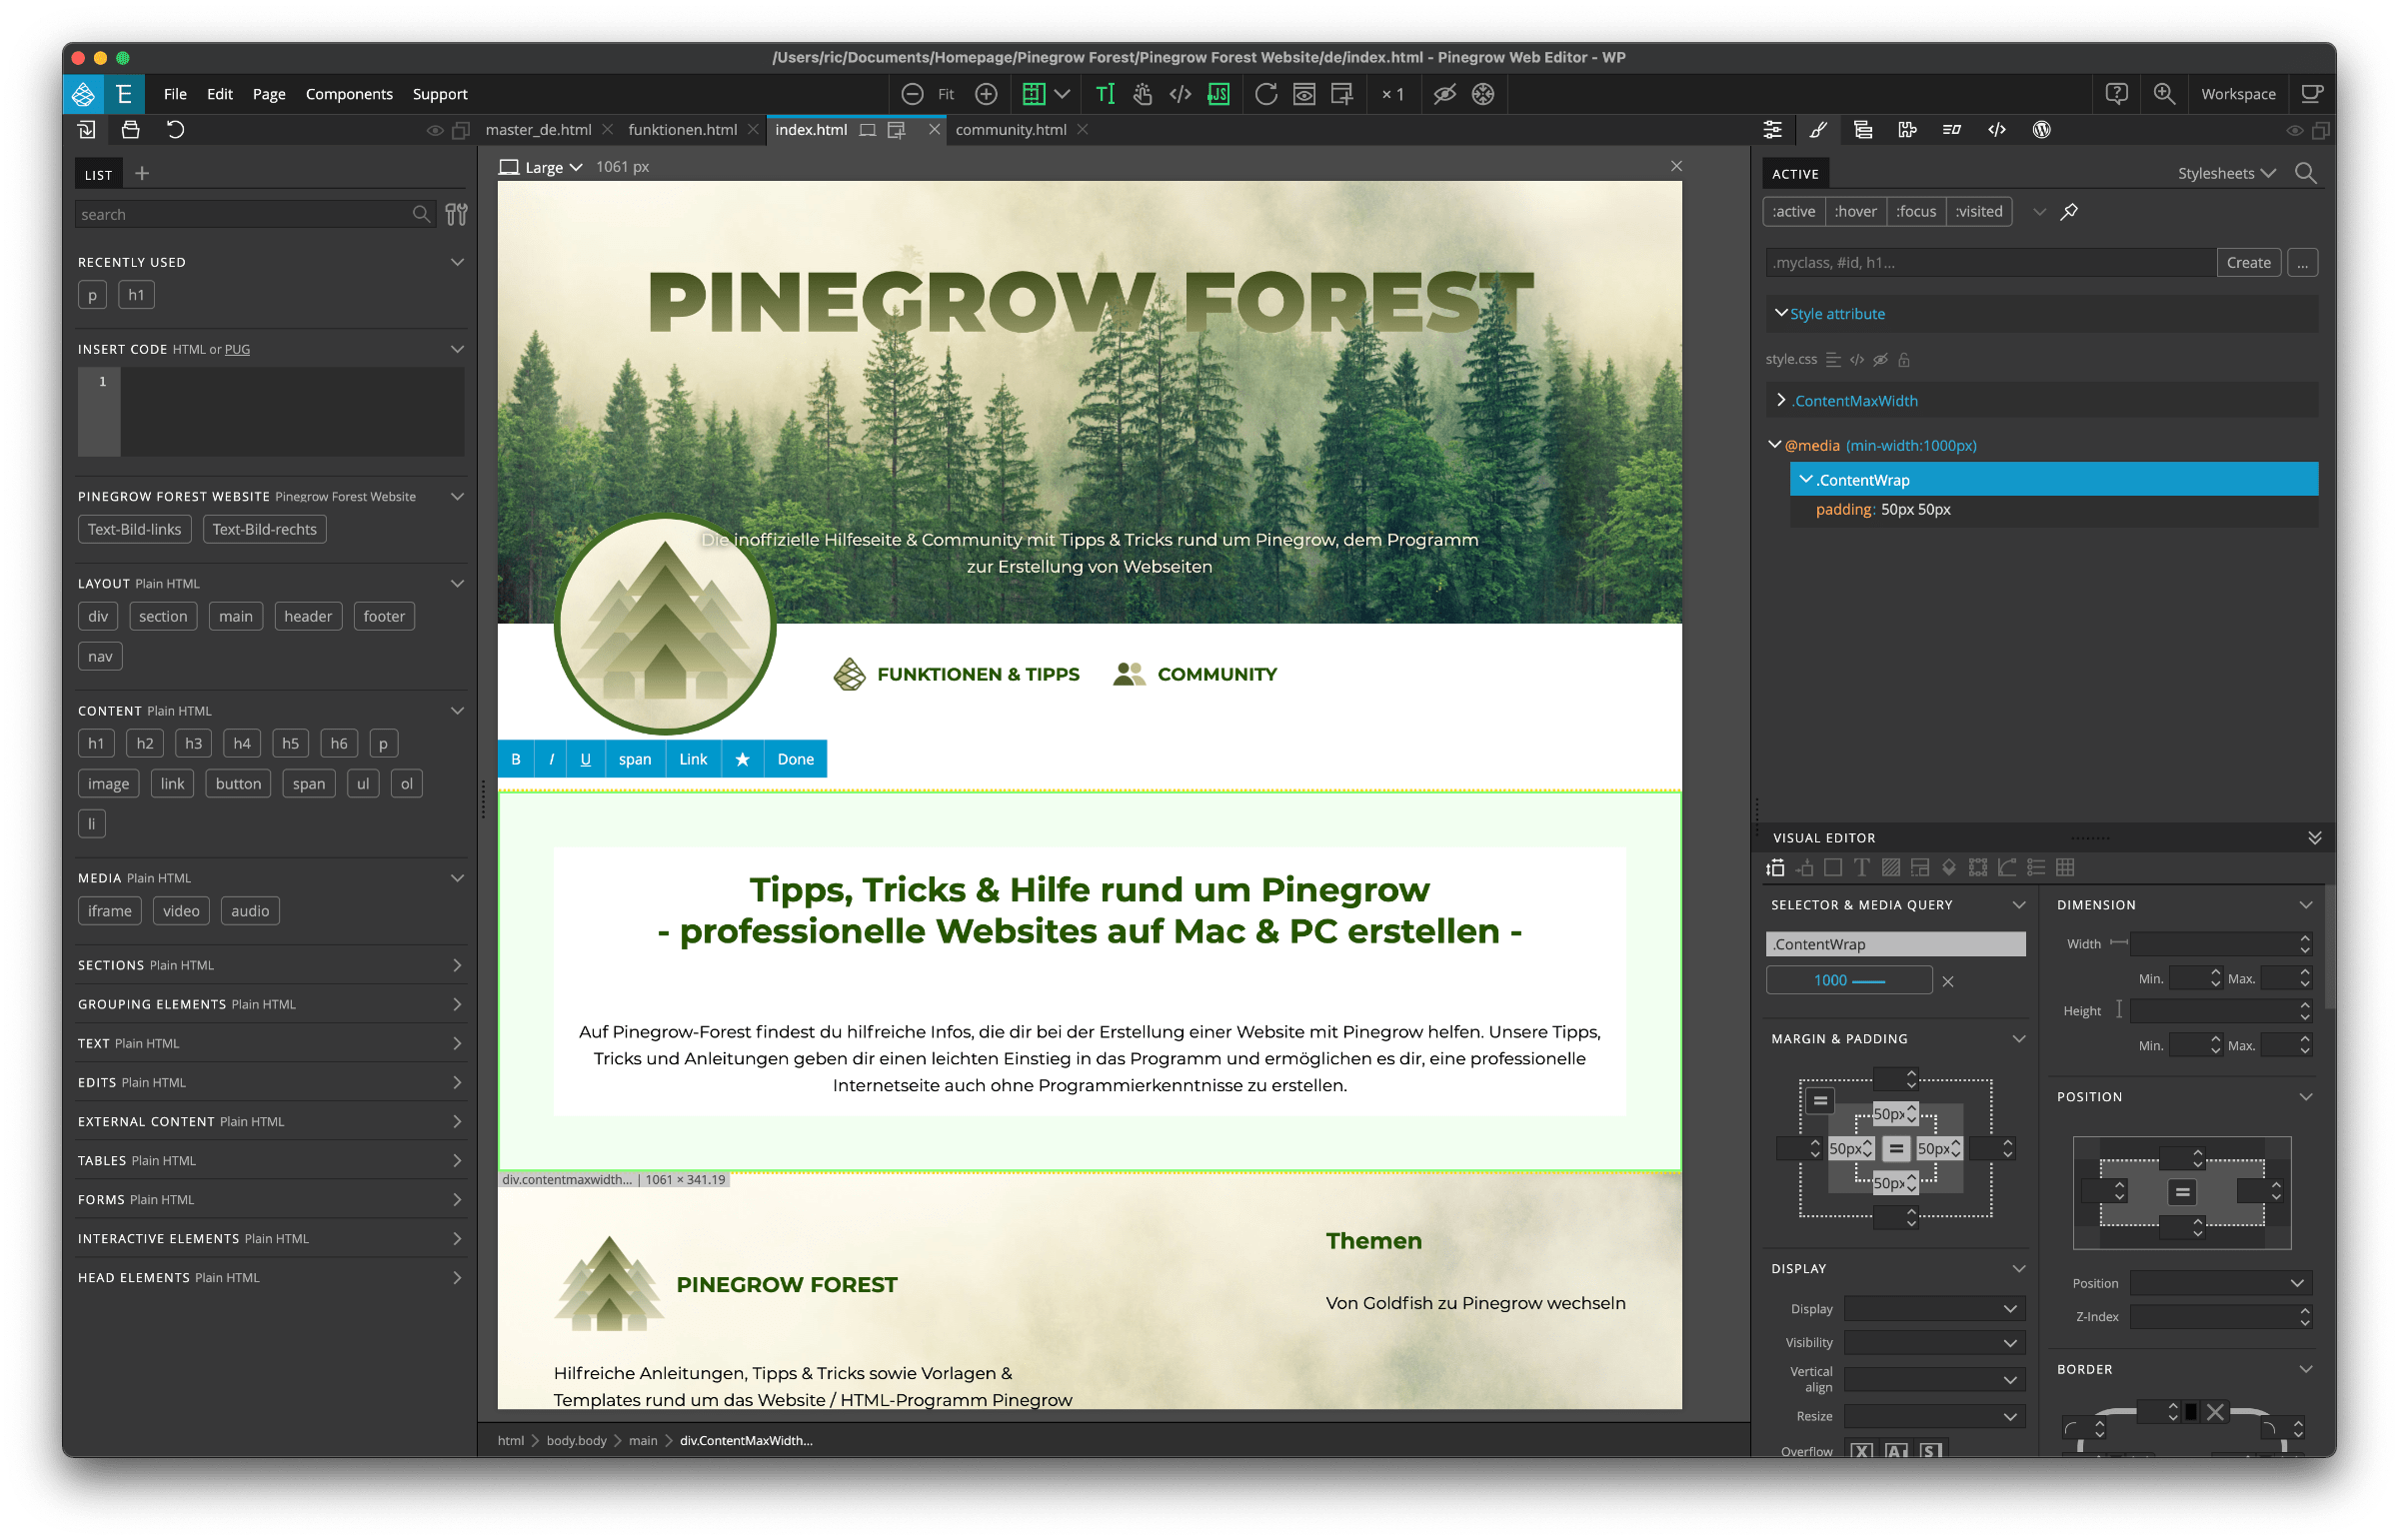 Pinegrow - Das Programm zur Erstellung von Webseiten für Profis mit geöffnetem Pinegrow Forest Projekt